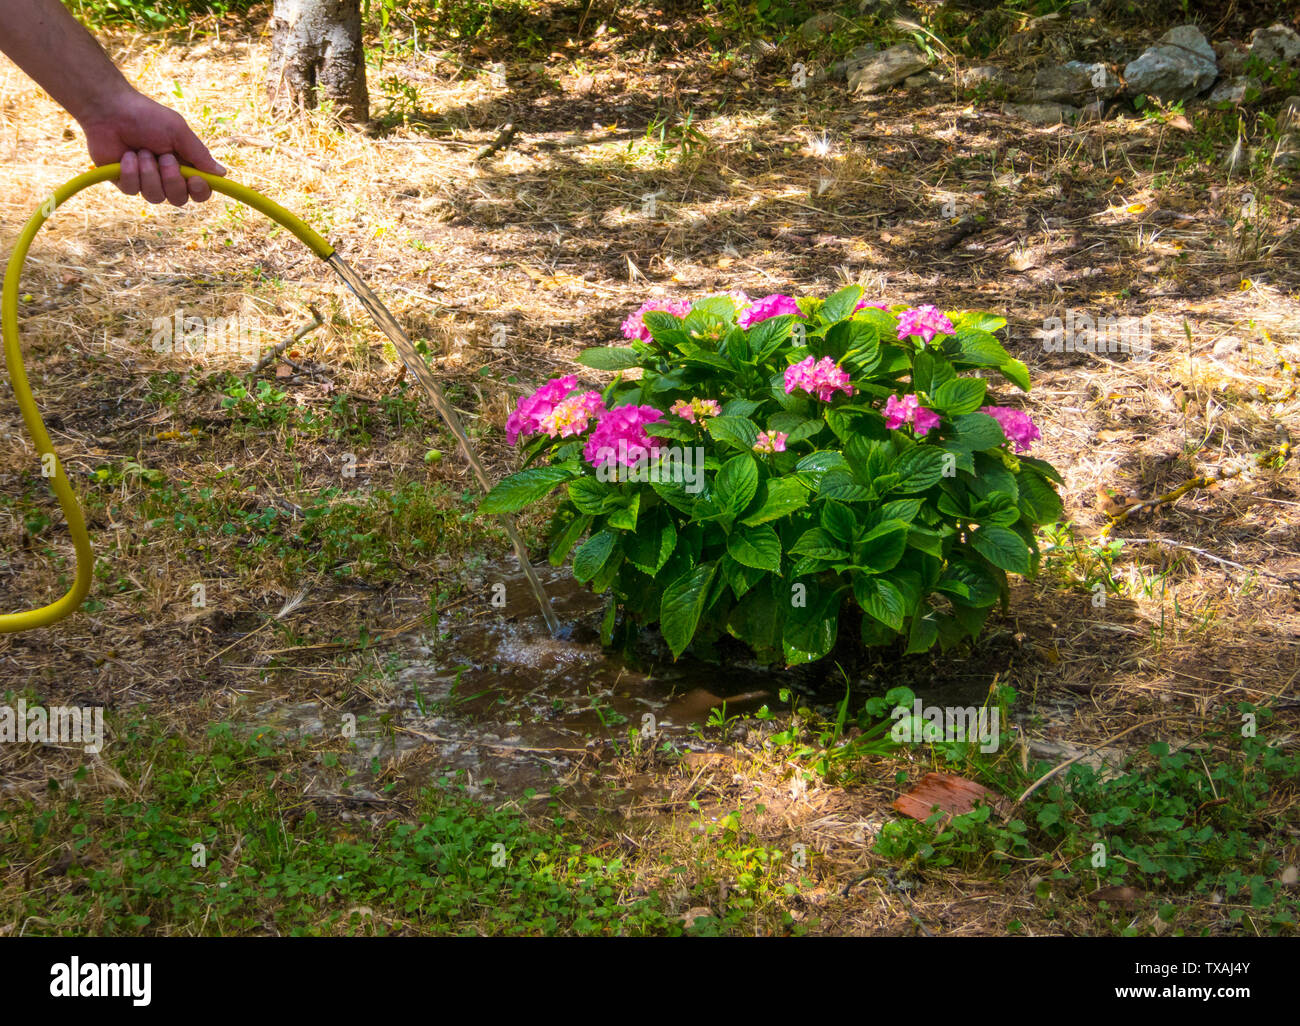 Impianti di irrigazione a mano una pianta di ortensie in un giardino con tubazione gialla Foto Stock